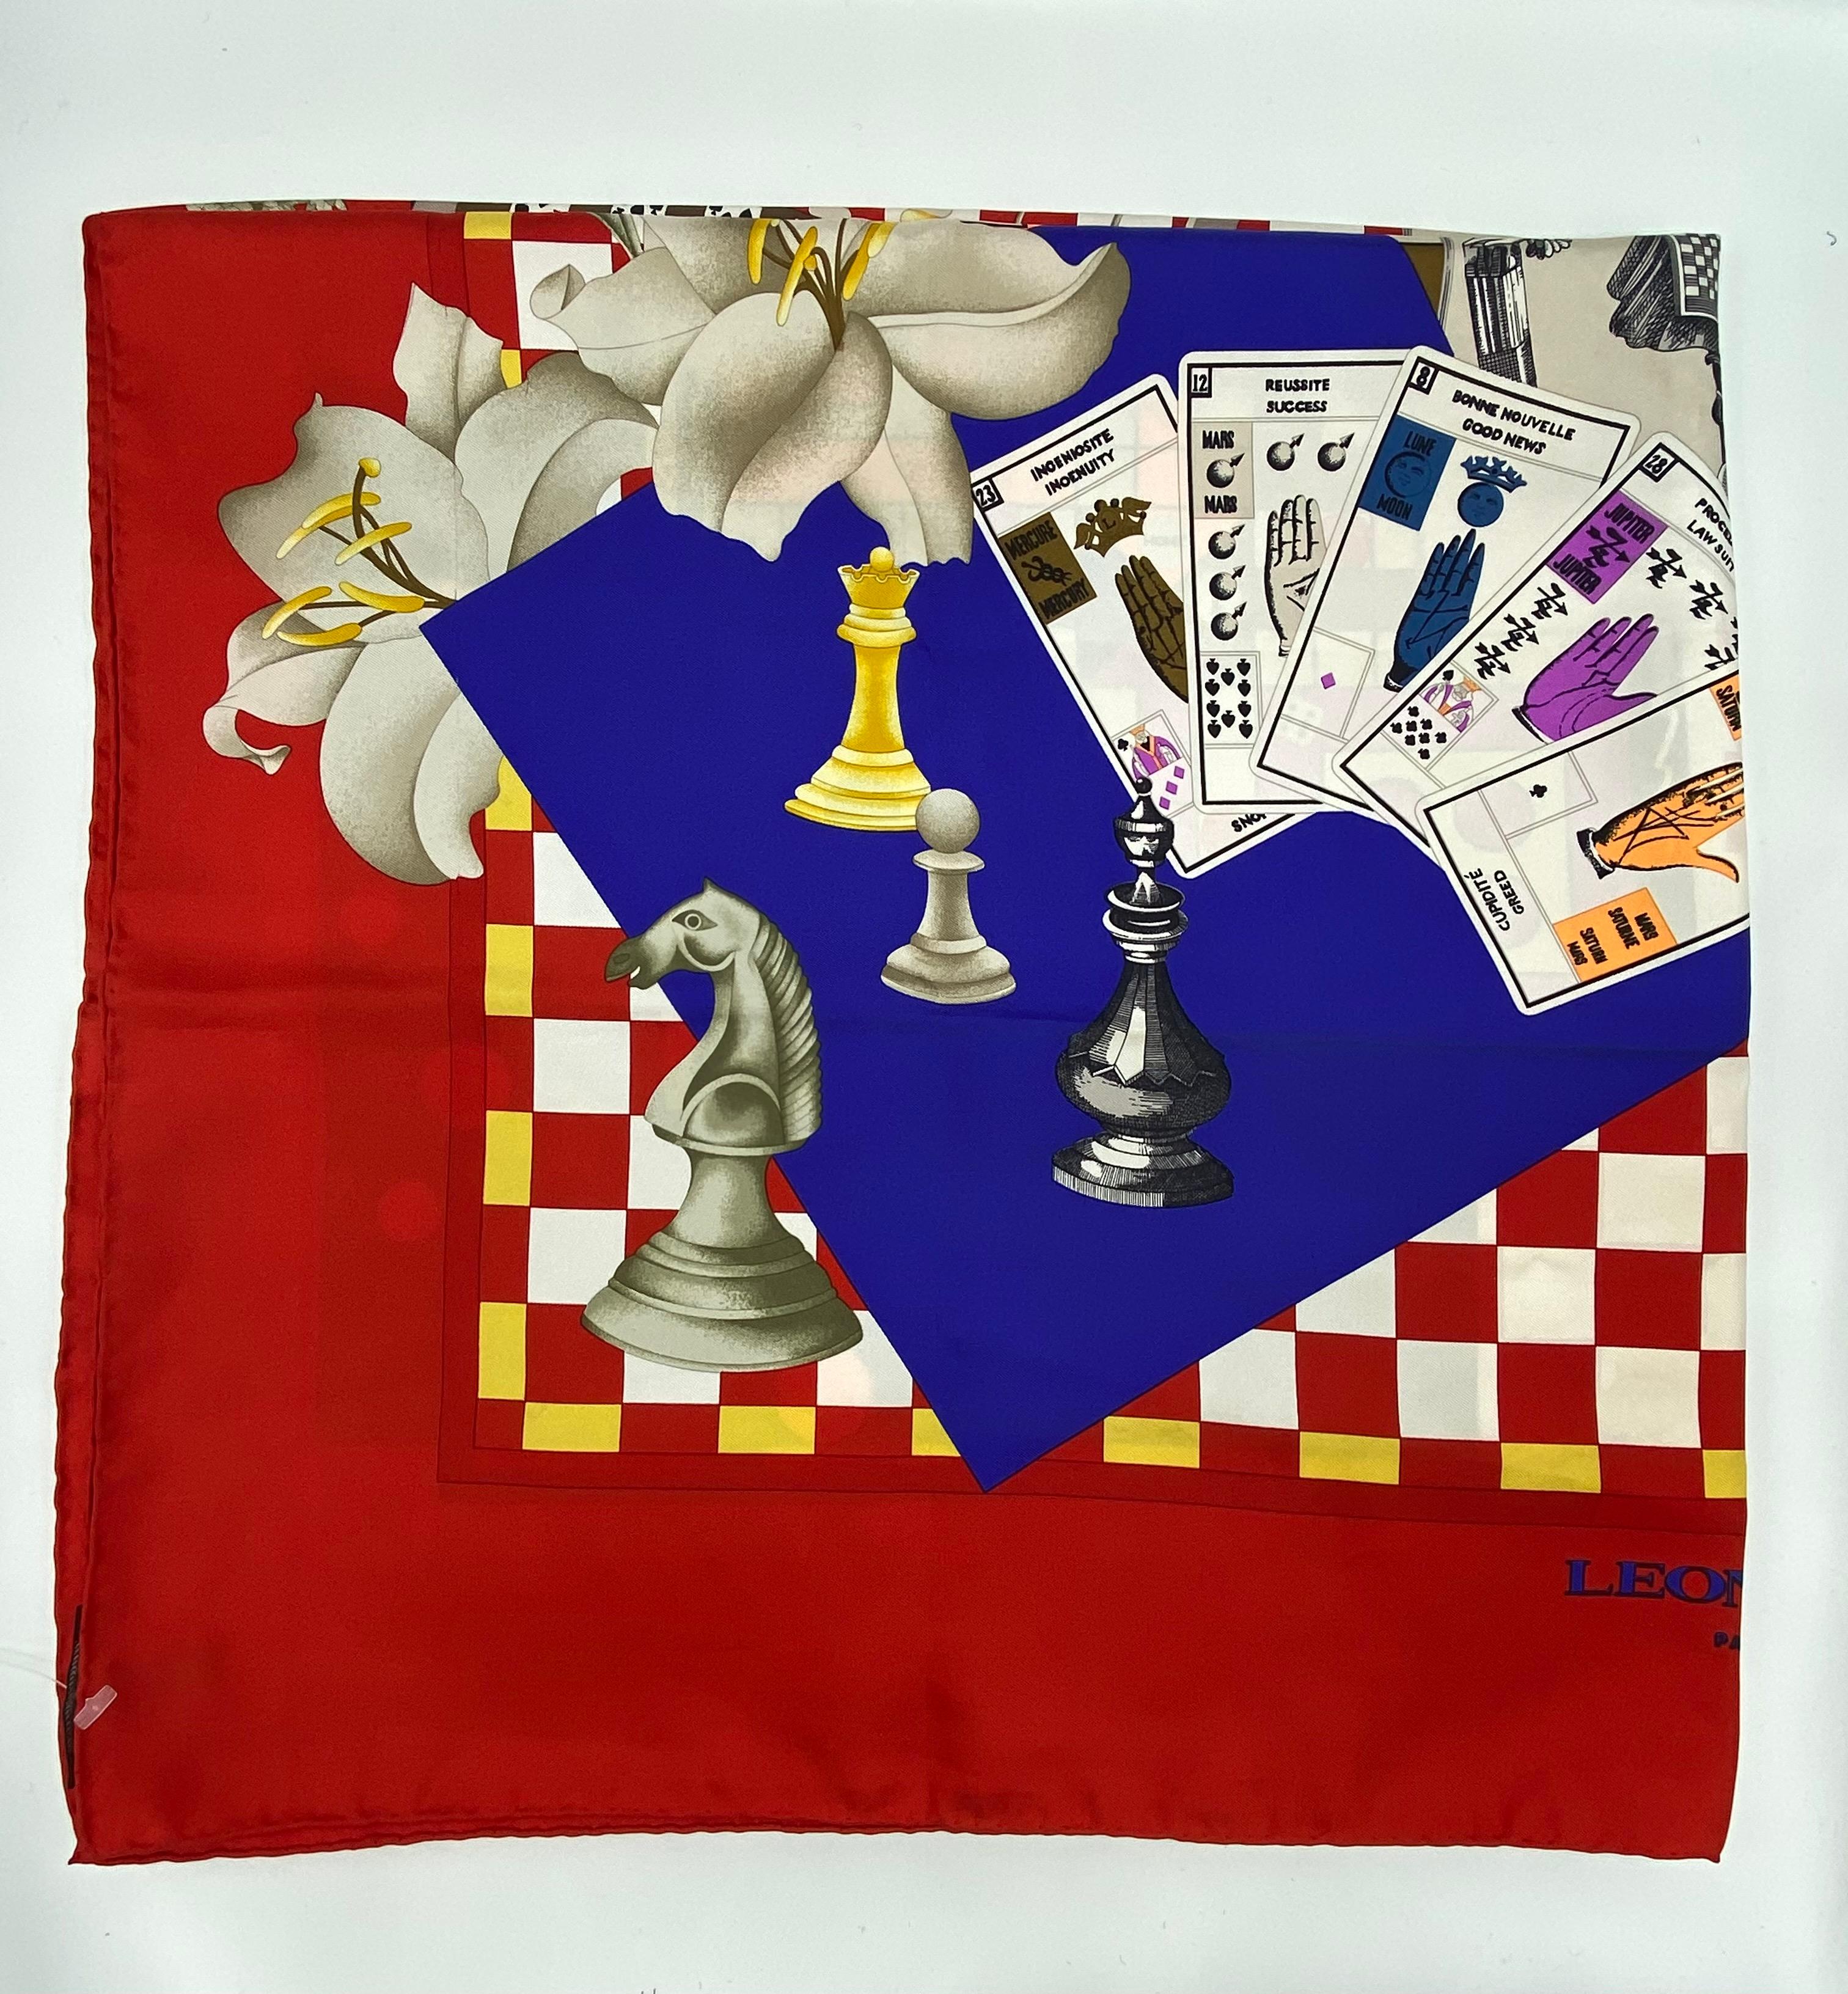 Einzelheiten zum Produkt:

Der Schal ist aus roter, marineblauer und mehrfarbiger Seide mit Glücksspiel-Aufdruck. Hergestellt in Frankreich.